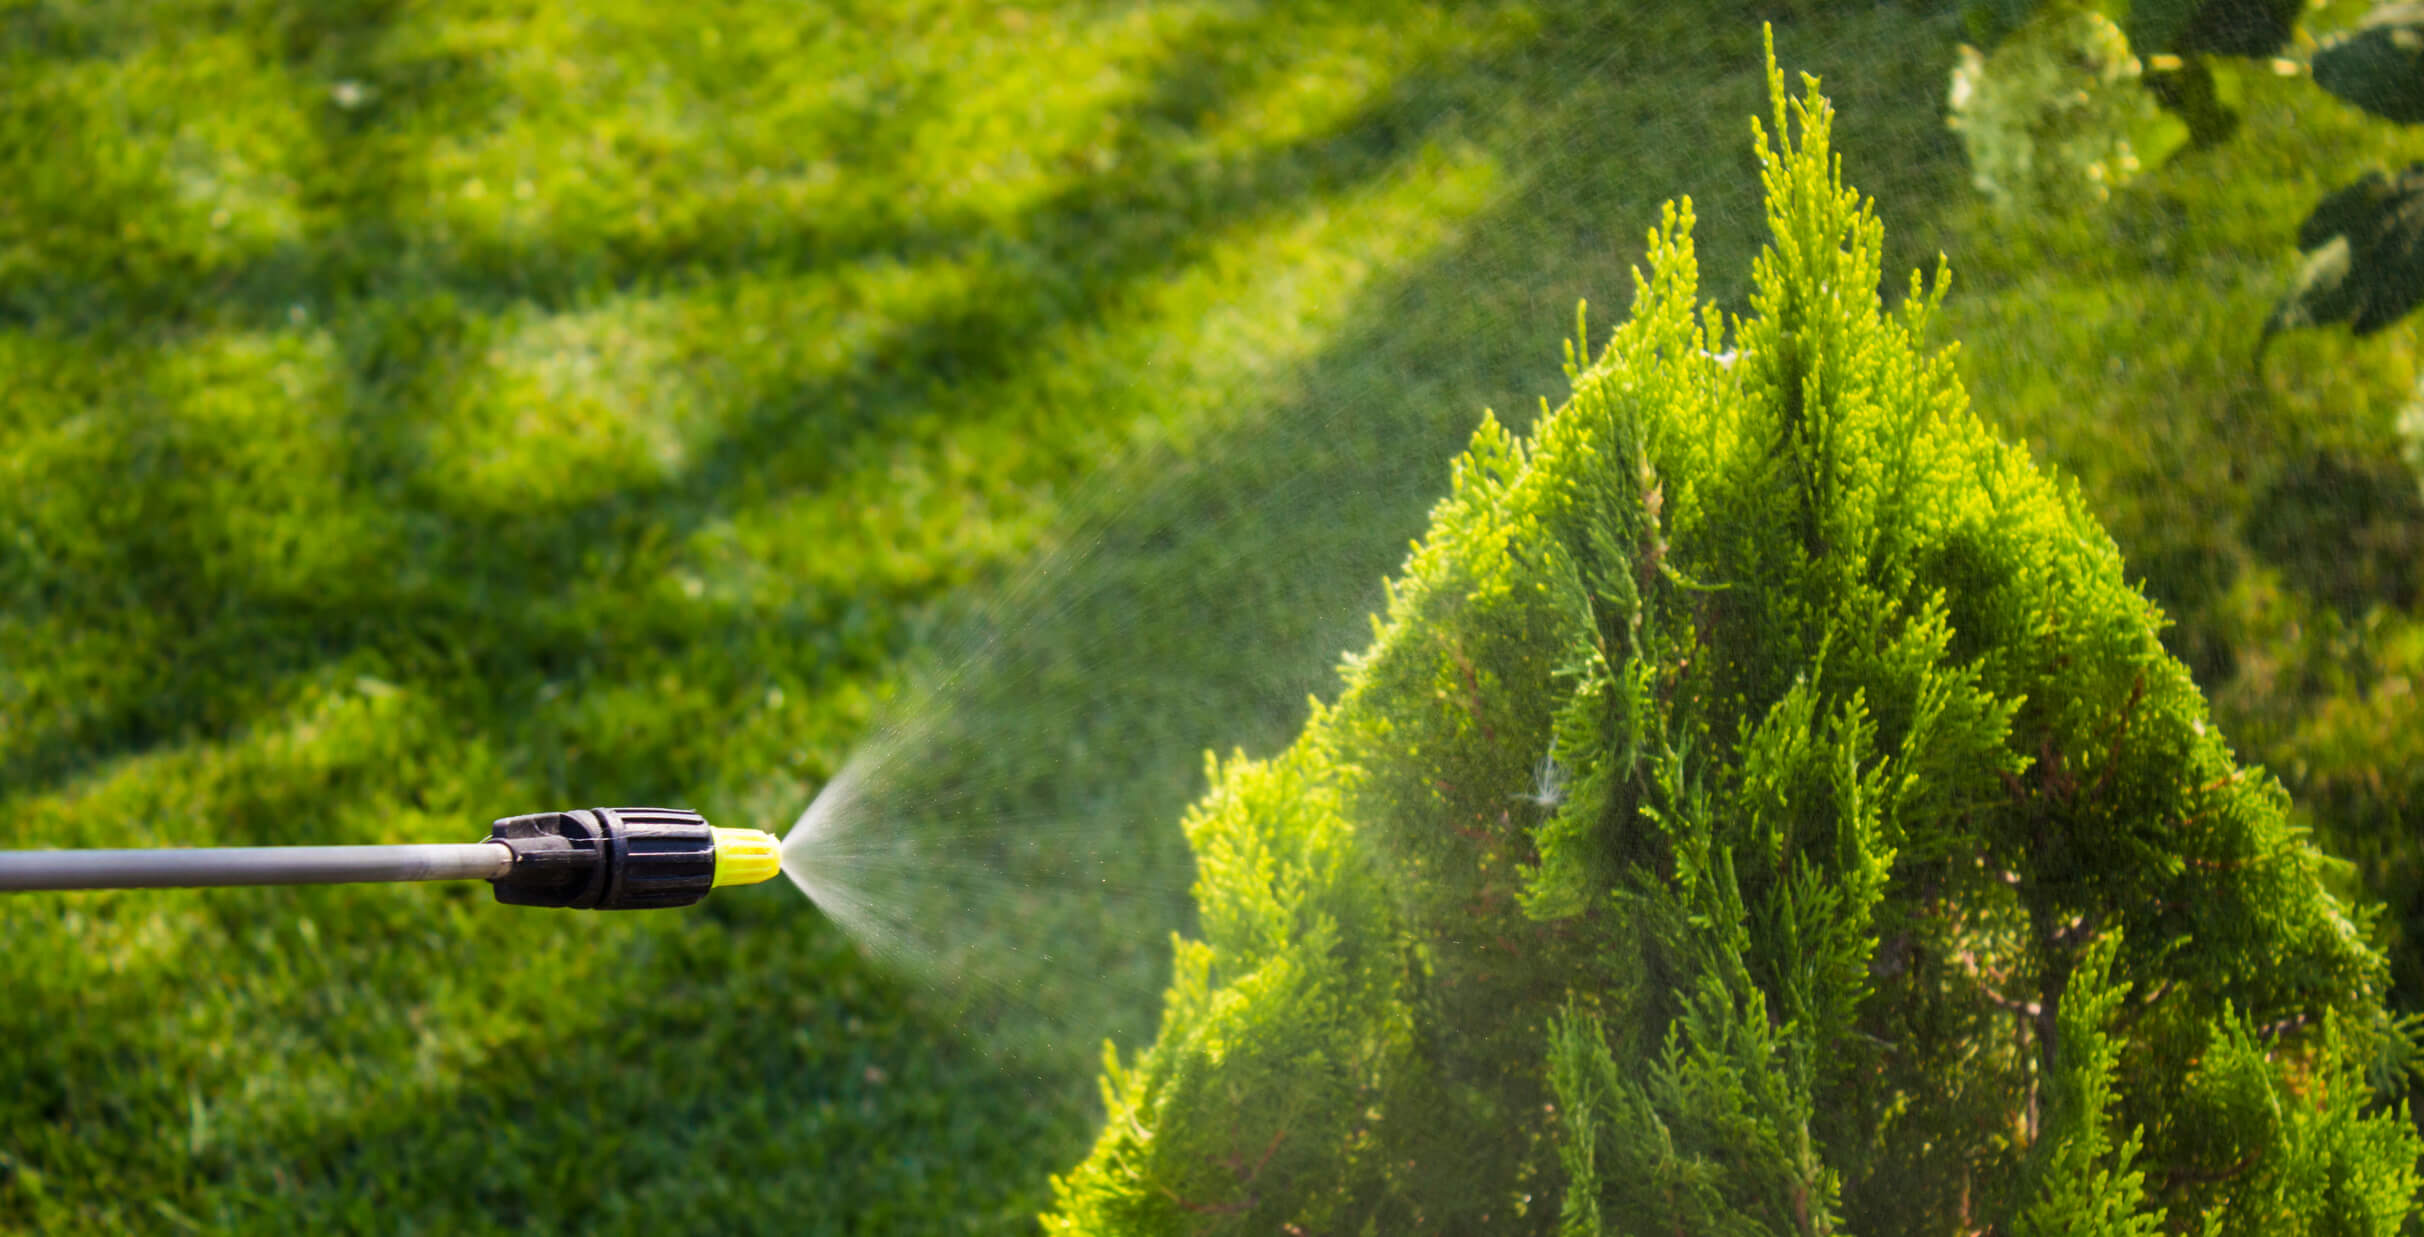 spraying bushes